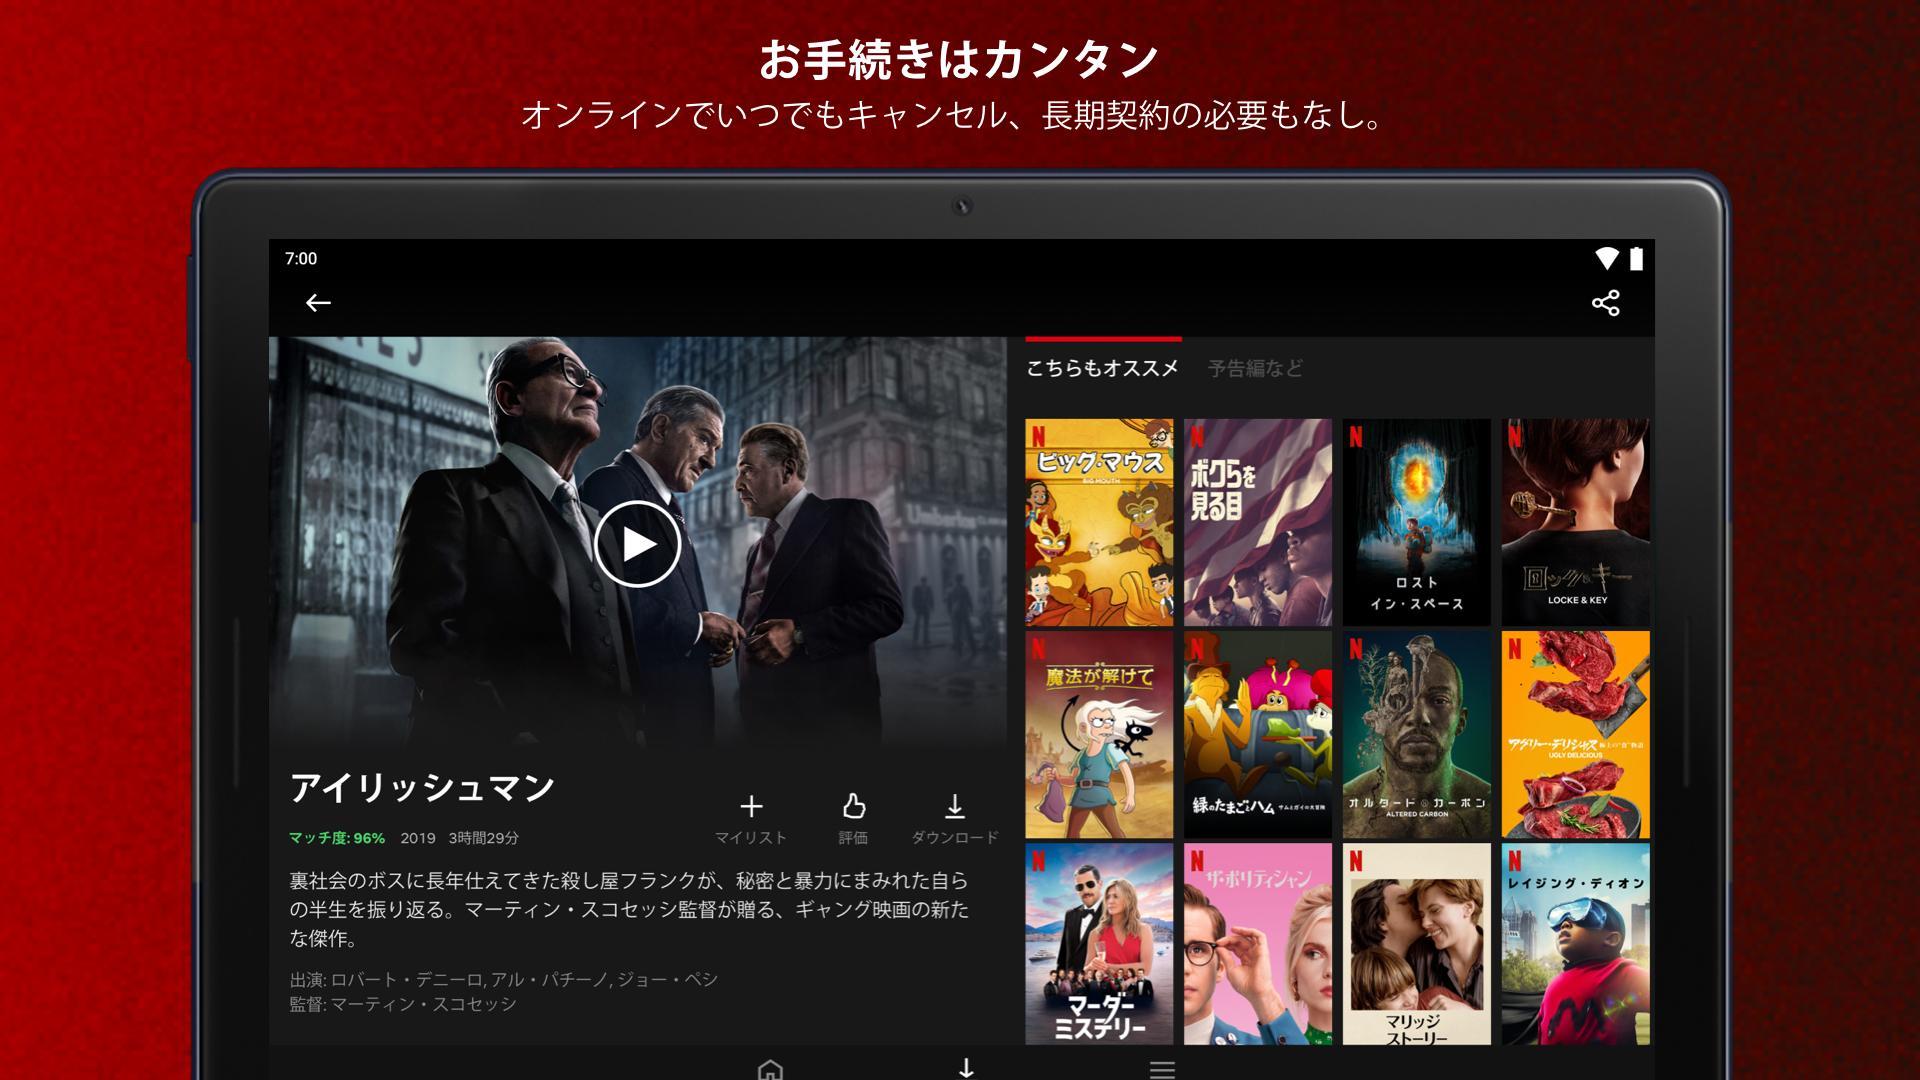 Android 用の Netflix Apk をダウンロード